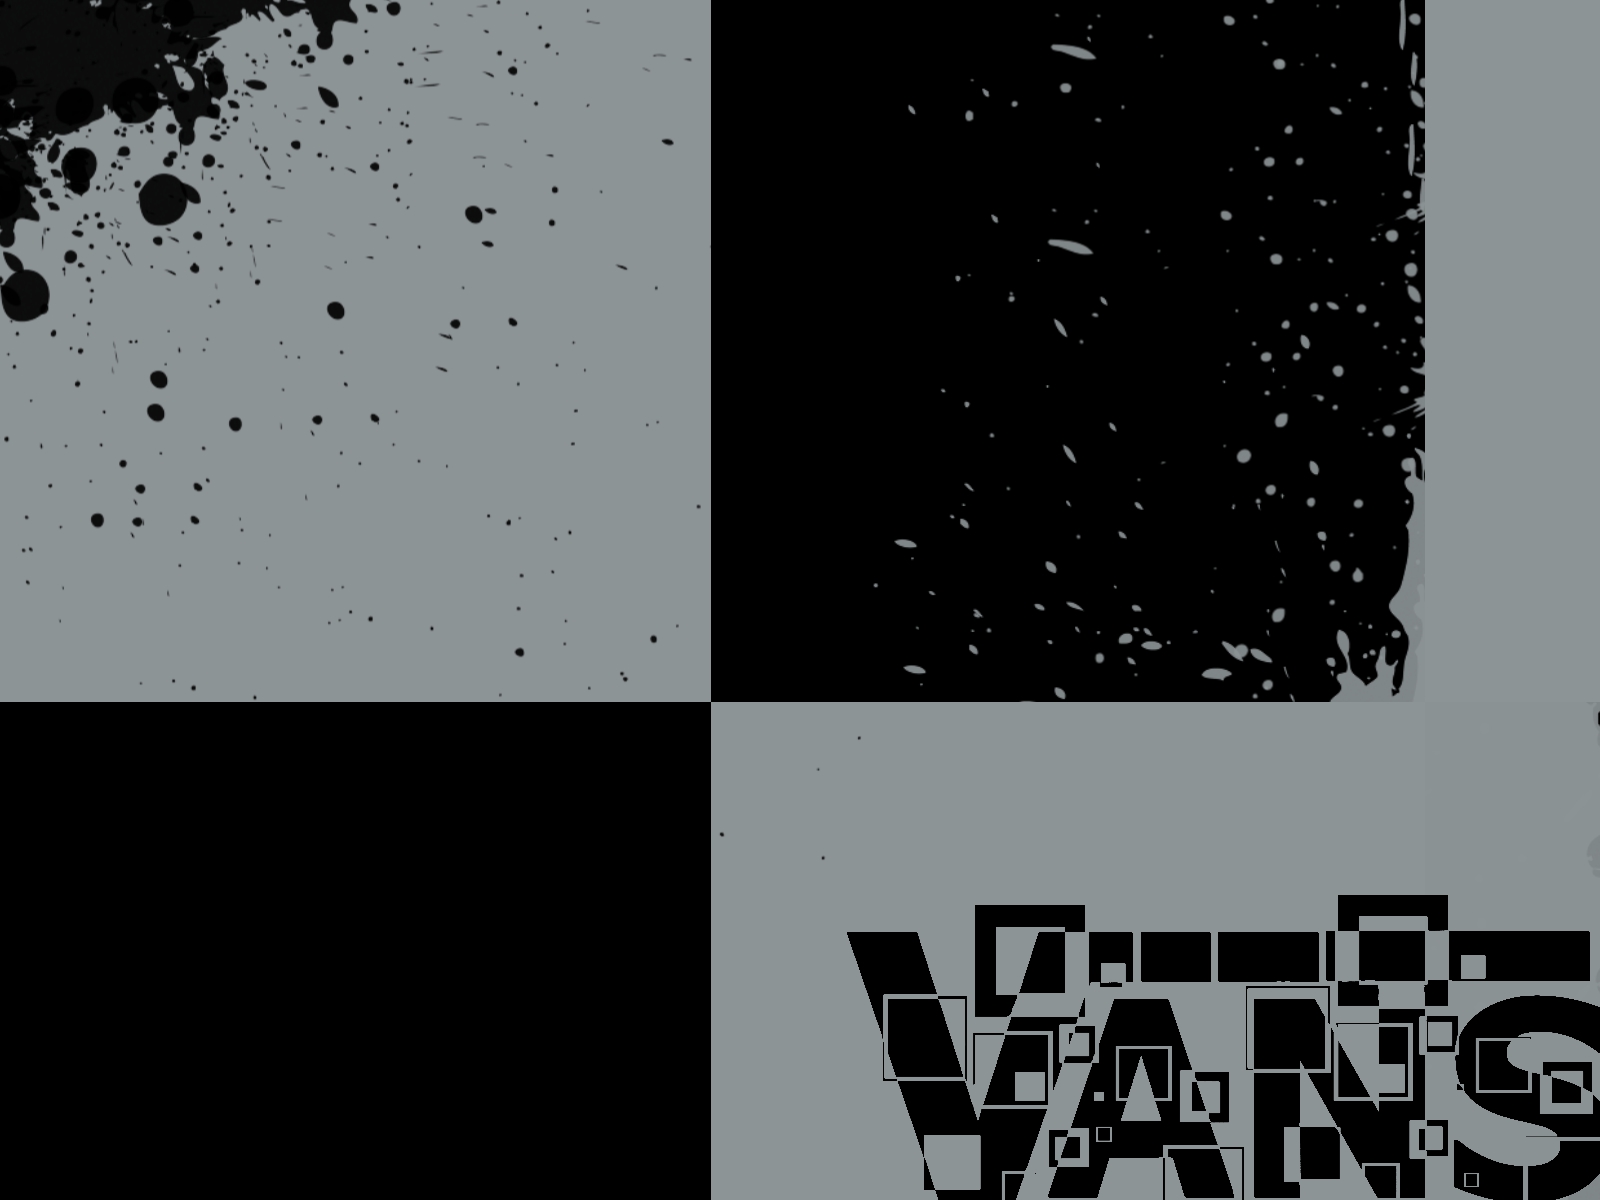 Vans Logo Black Background